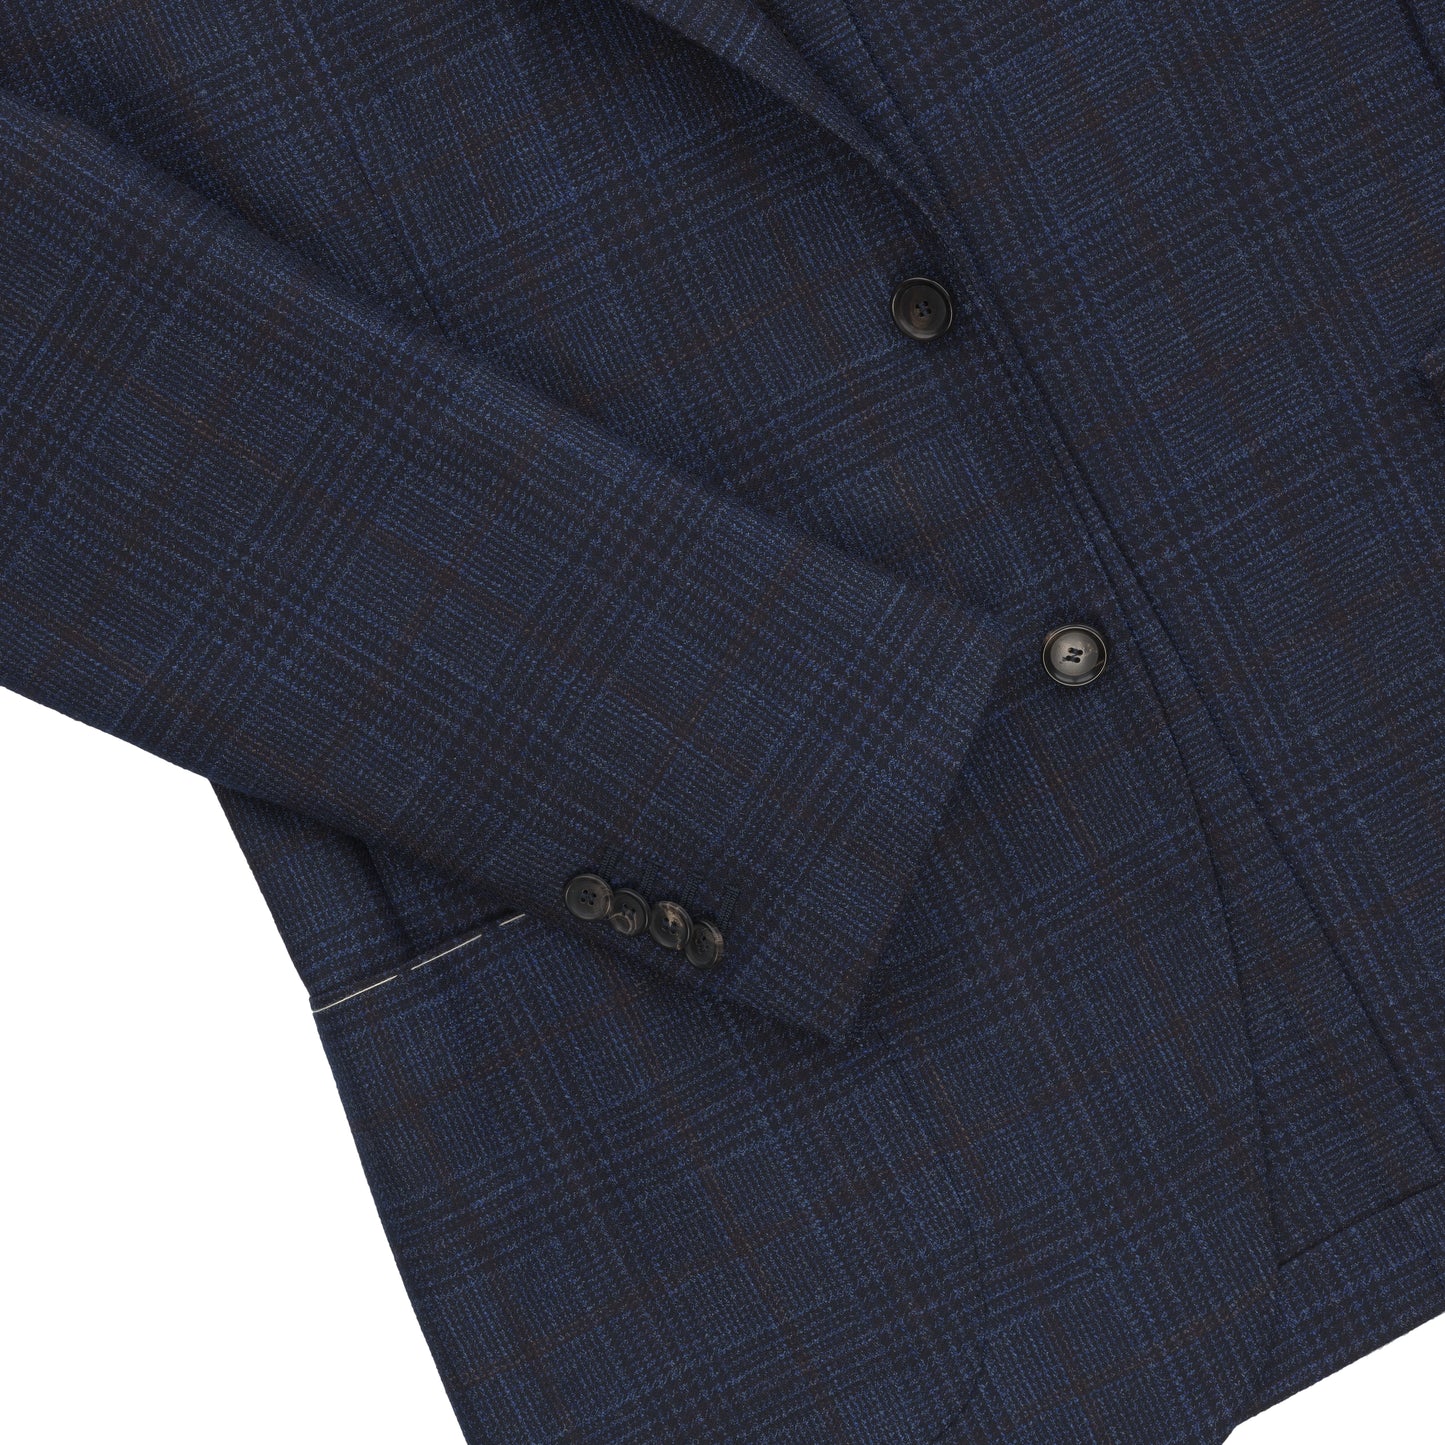 Einreihige Jacke aus Wolle und Kaschmir in Marineblau. Exklusiv für Sartale hergestellt